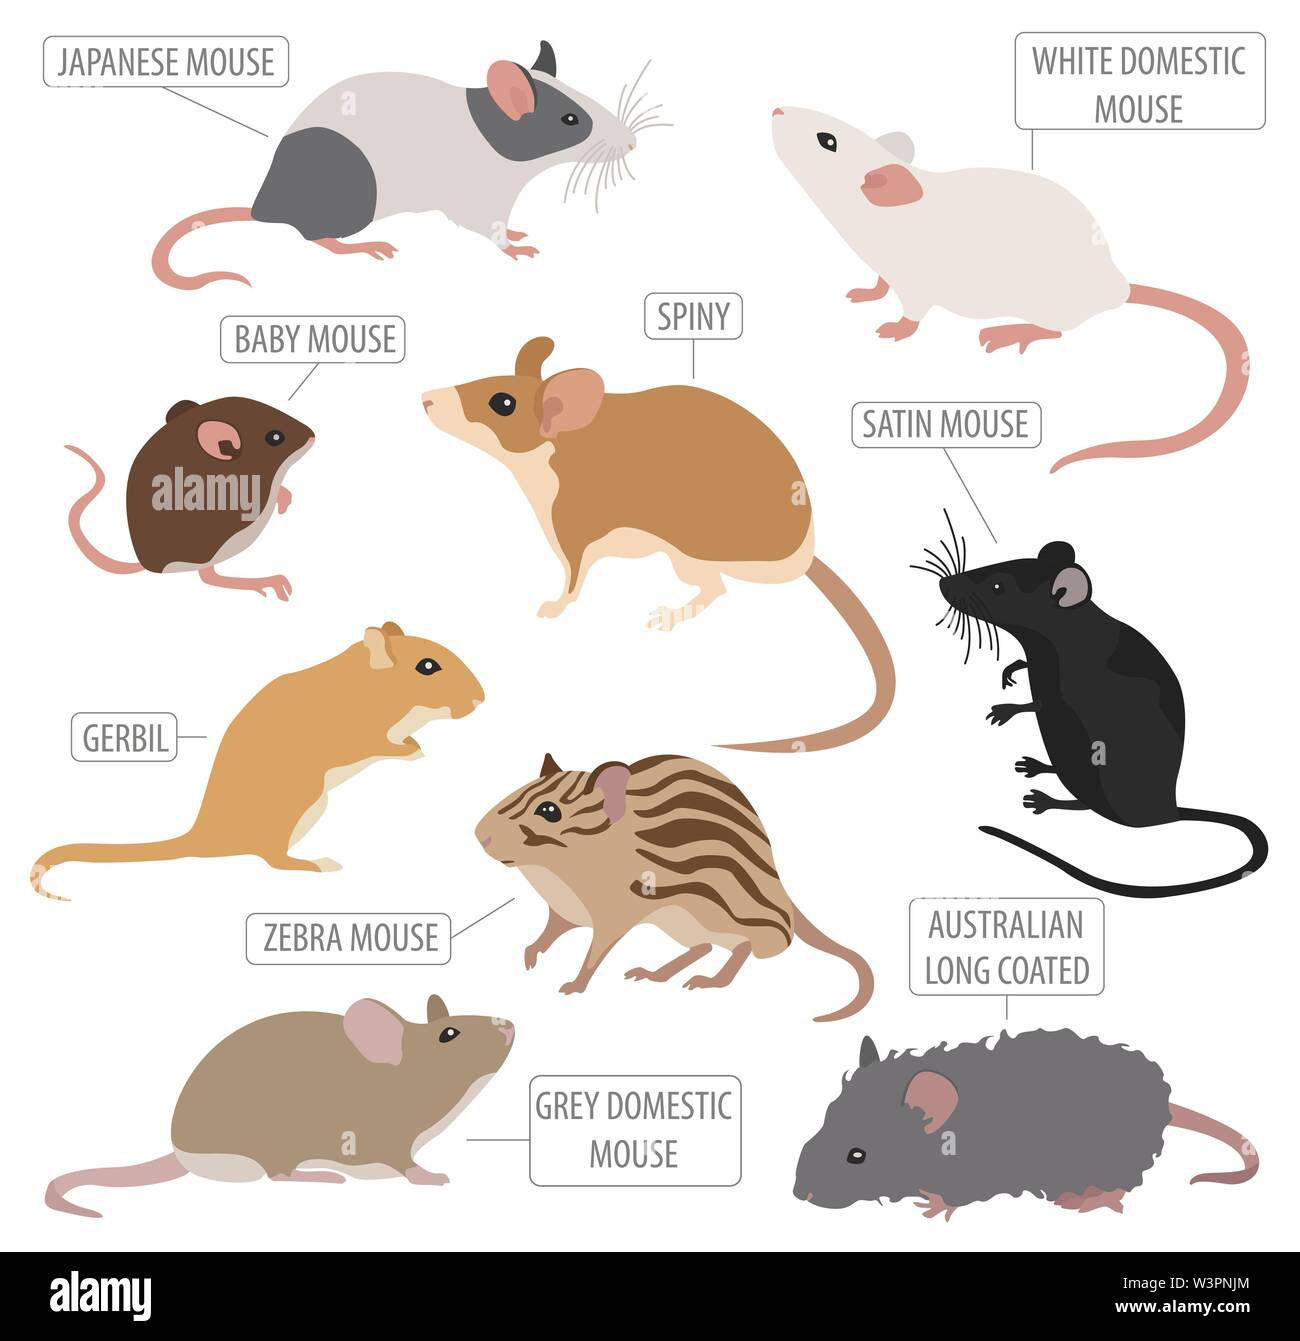 Mäuse Rassen Icon Set Flat Style isoliert auf Weiss. Maus Nagetiere Sammlung. Erstellen Sie eigene Infografik über Haustiere. Vector Illustration Stock Vektor